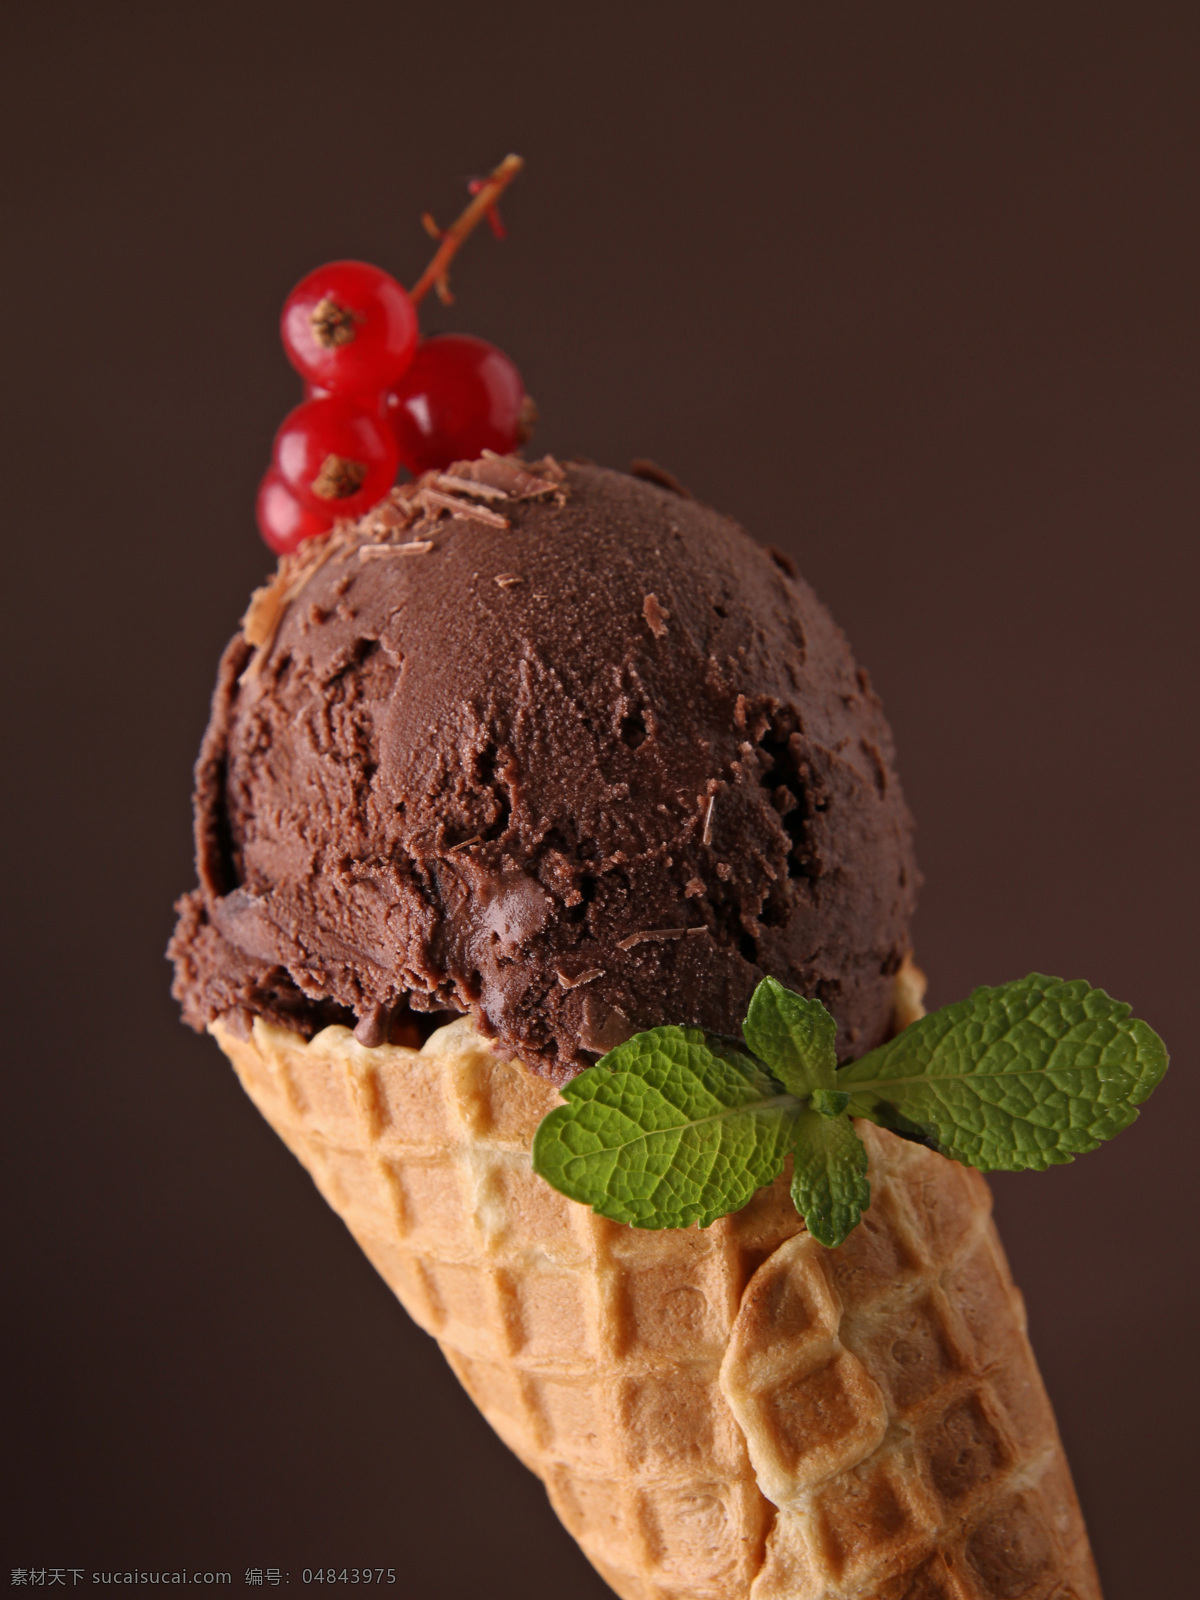 巧克力 冰 激 淋 醋栗 点心 美食 甜品 巧克力冰激淋 浆果 薄荷 冷饮 其他类别 餐饮美食 黑色